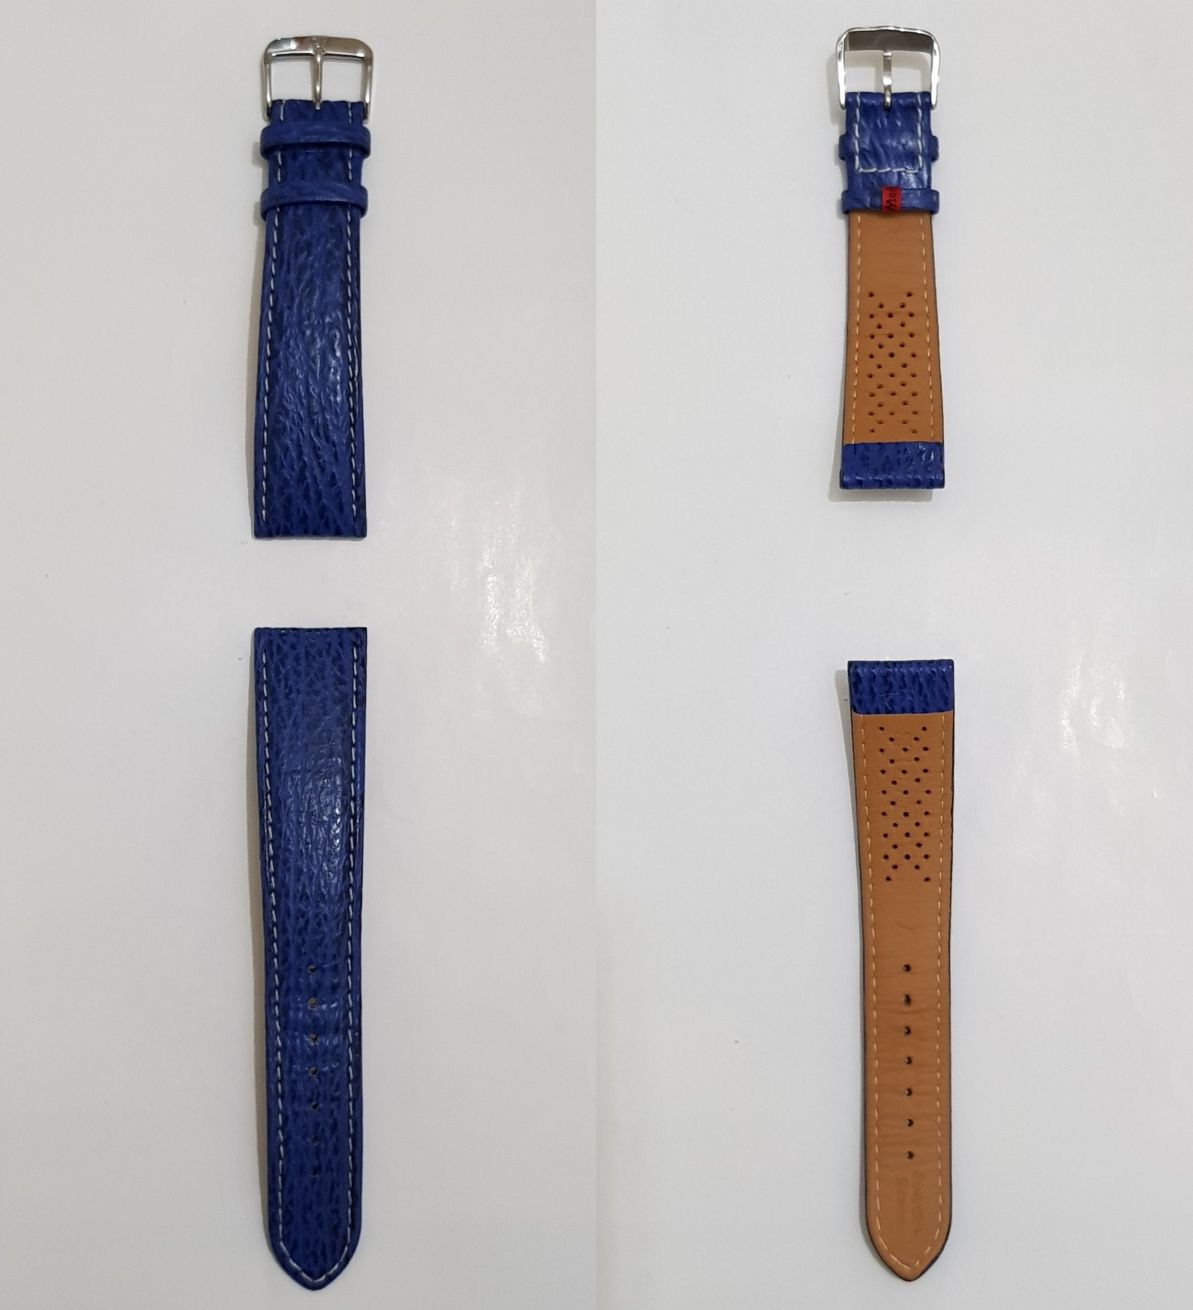 Curea ceas Di Modell, din PIELE DE RECHIN, albastra, 22mm ORIGINALA !!